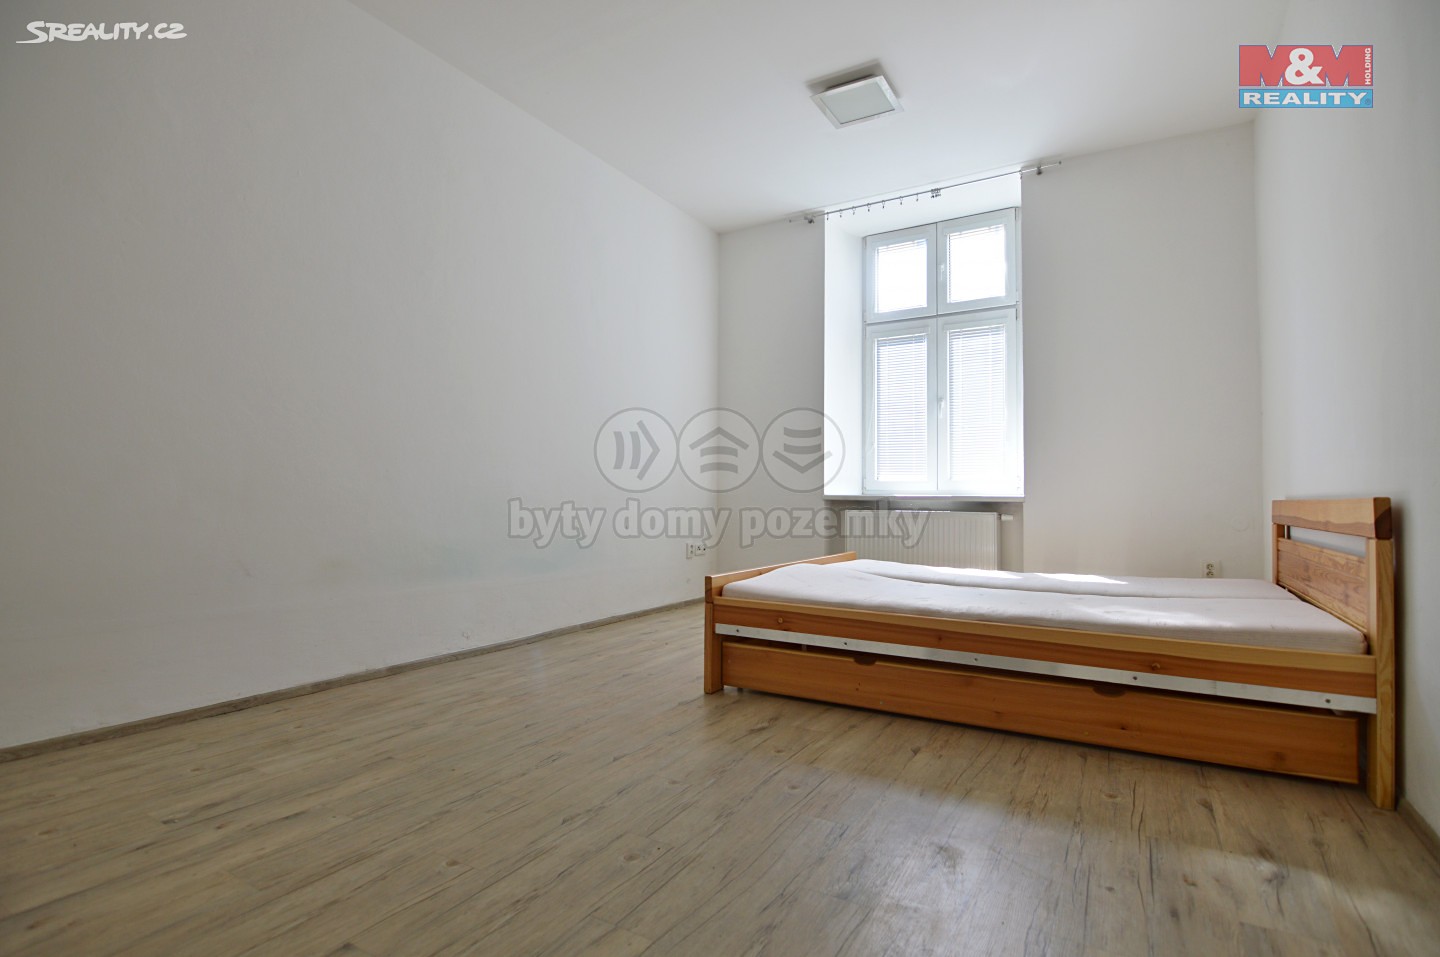 Pronájem bytu 1+1 58 m², Horní, Hradec Králové - Roudnička